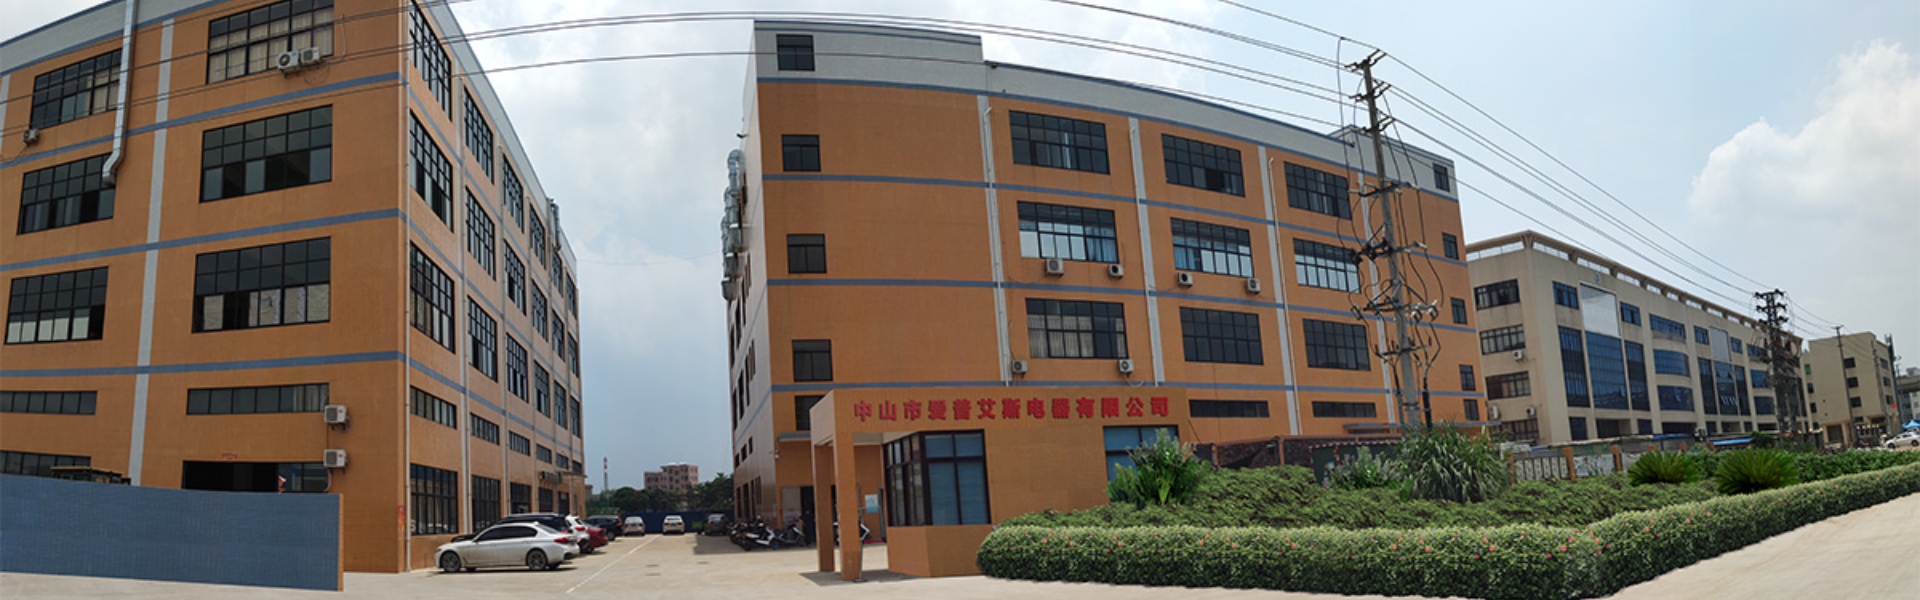 Lõi tụ điện, phim đã được,...,Zhongshan Epers Electrical Appliances Co.,Ltd.